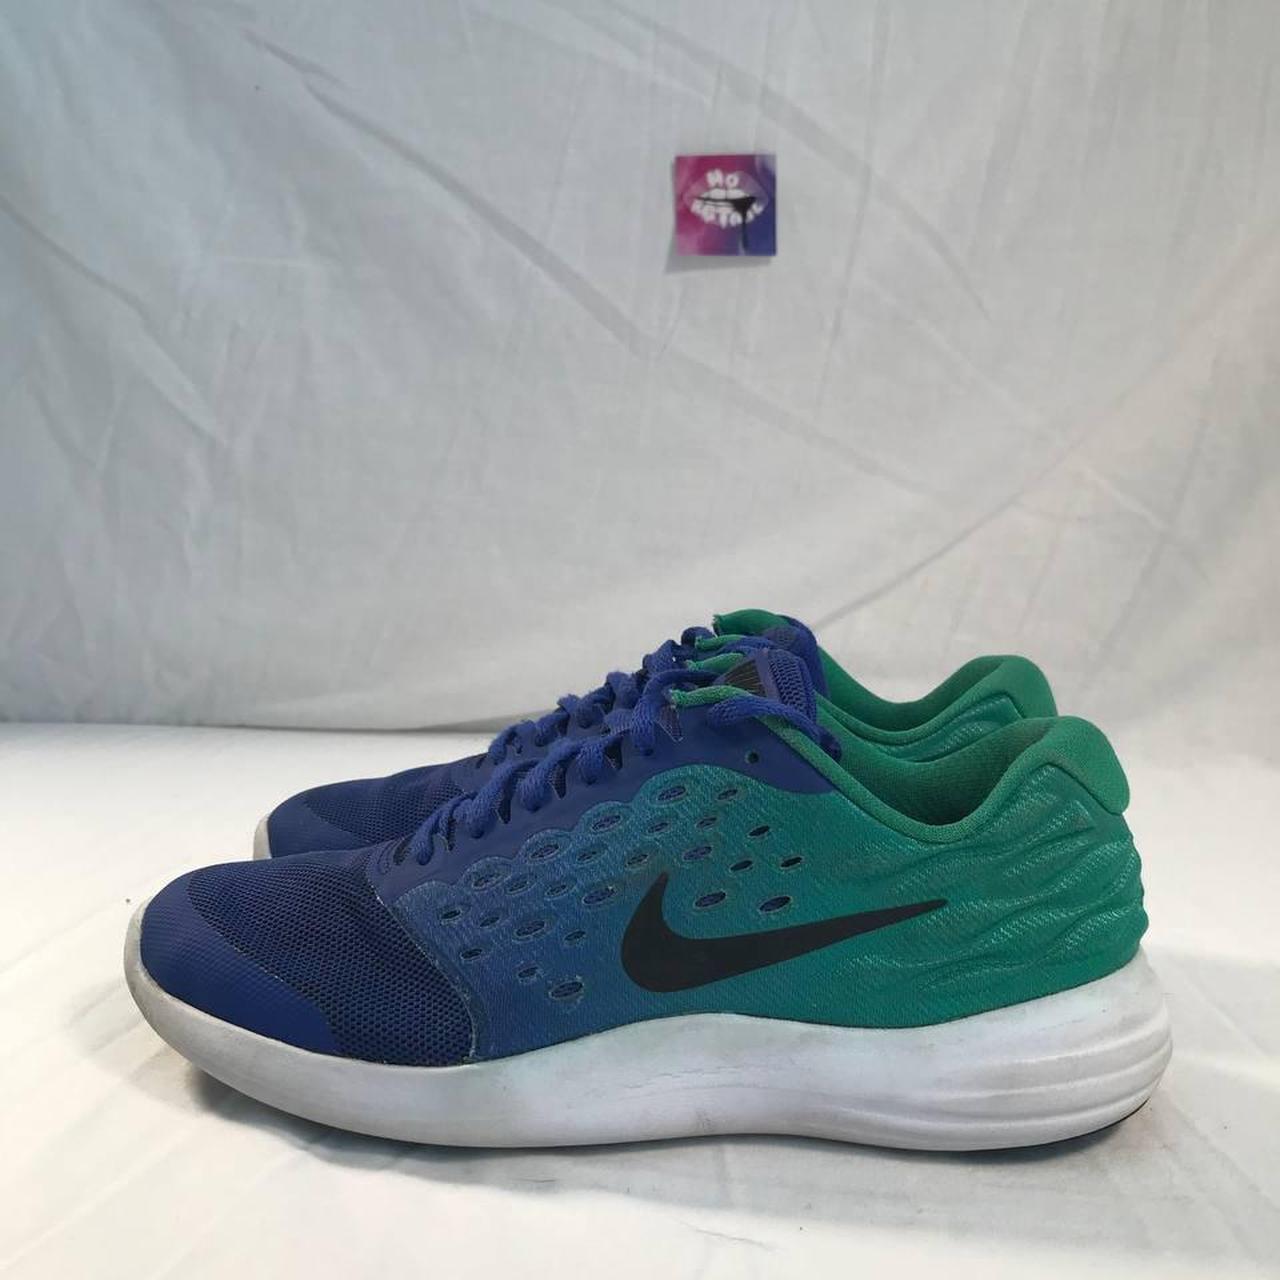 Nike Lunarstelos Shoes Size: or 8.5... - Depop